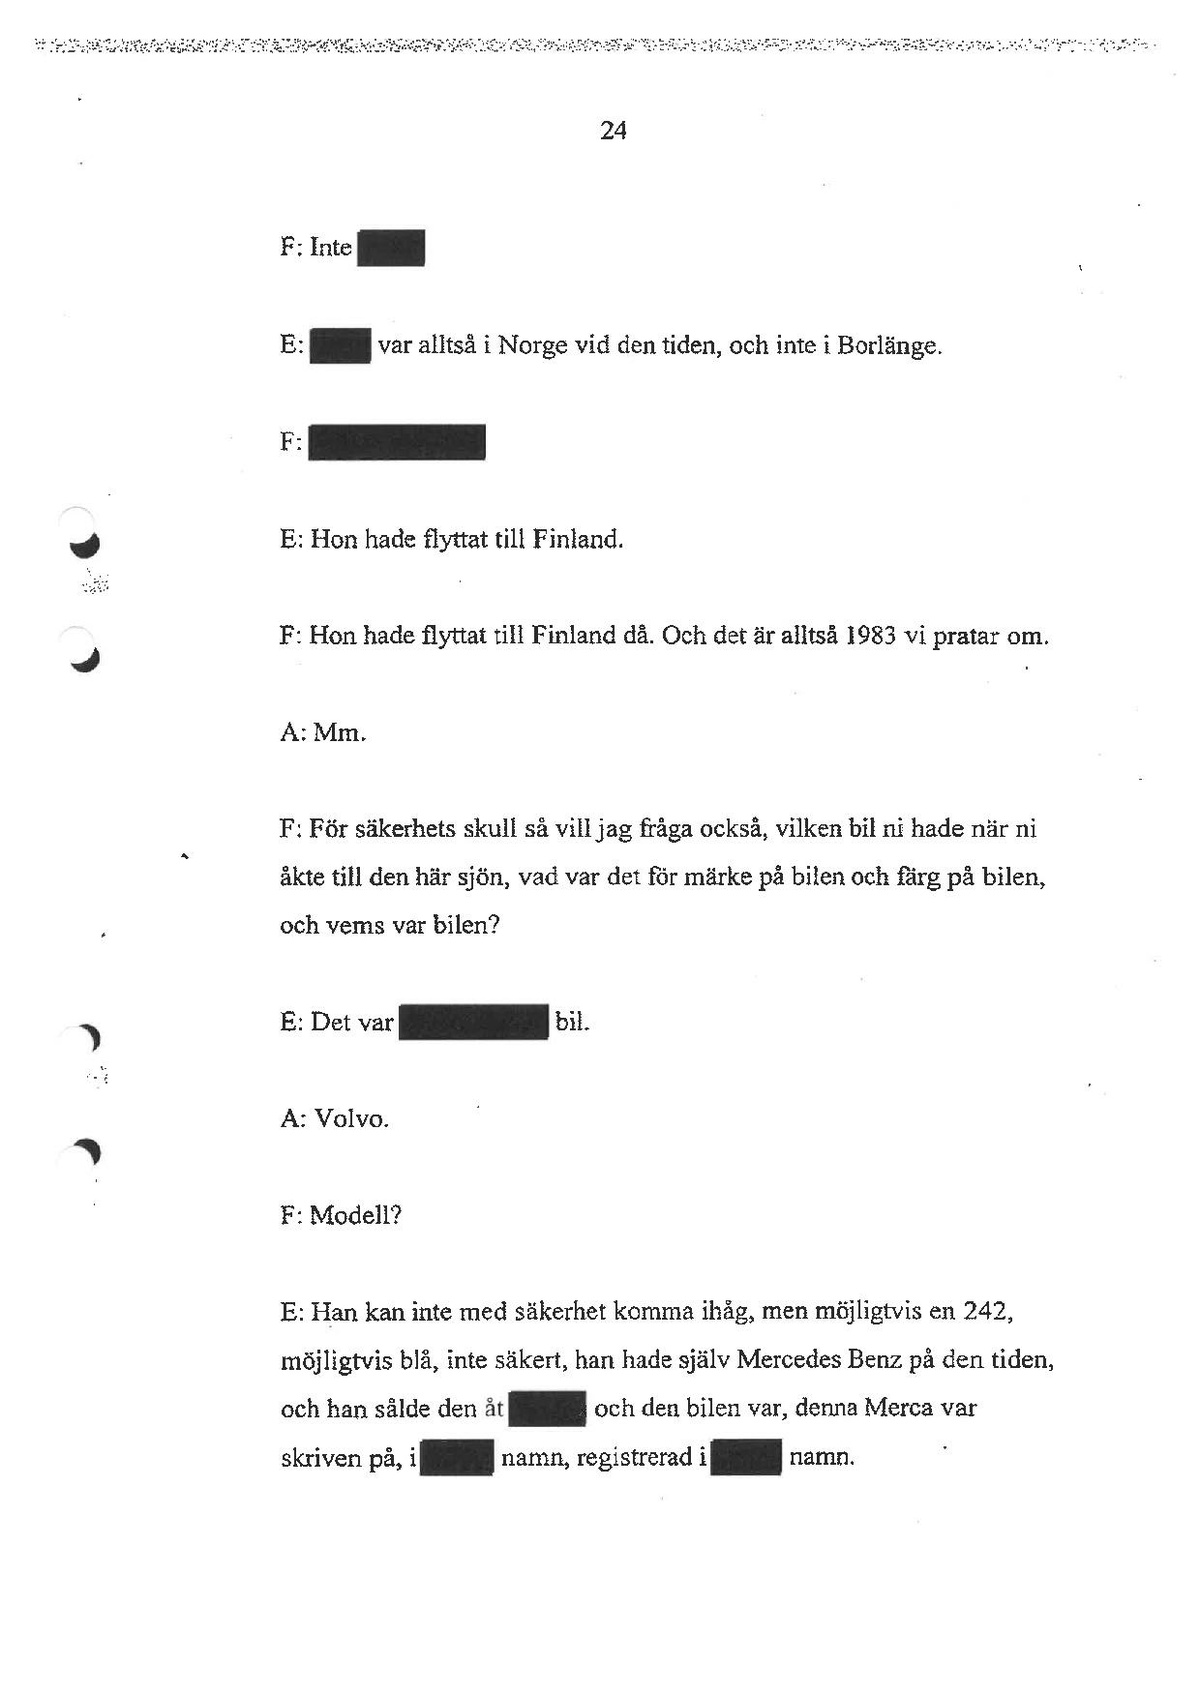 Pol-1998-11-02 IA12028-00-Q Förhör med Lasse Ainasoja.pdf